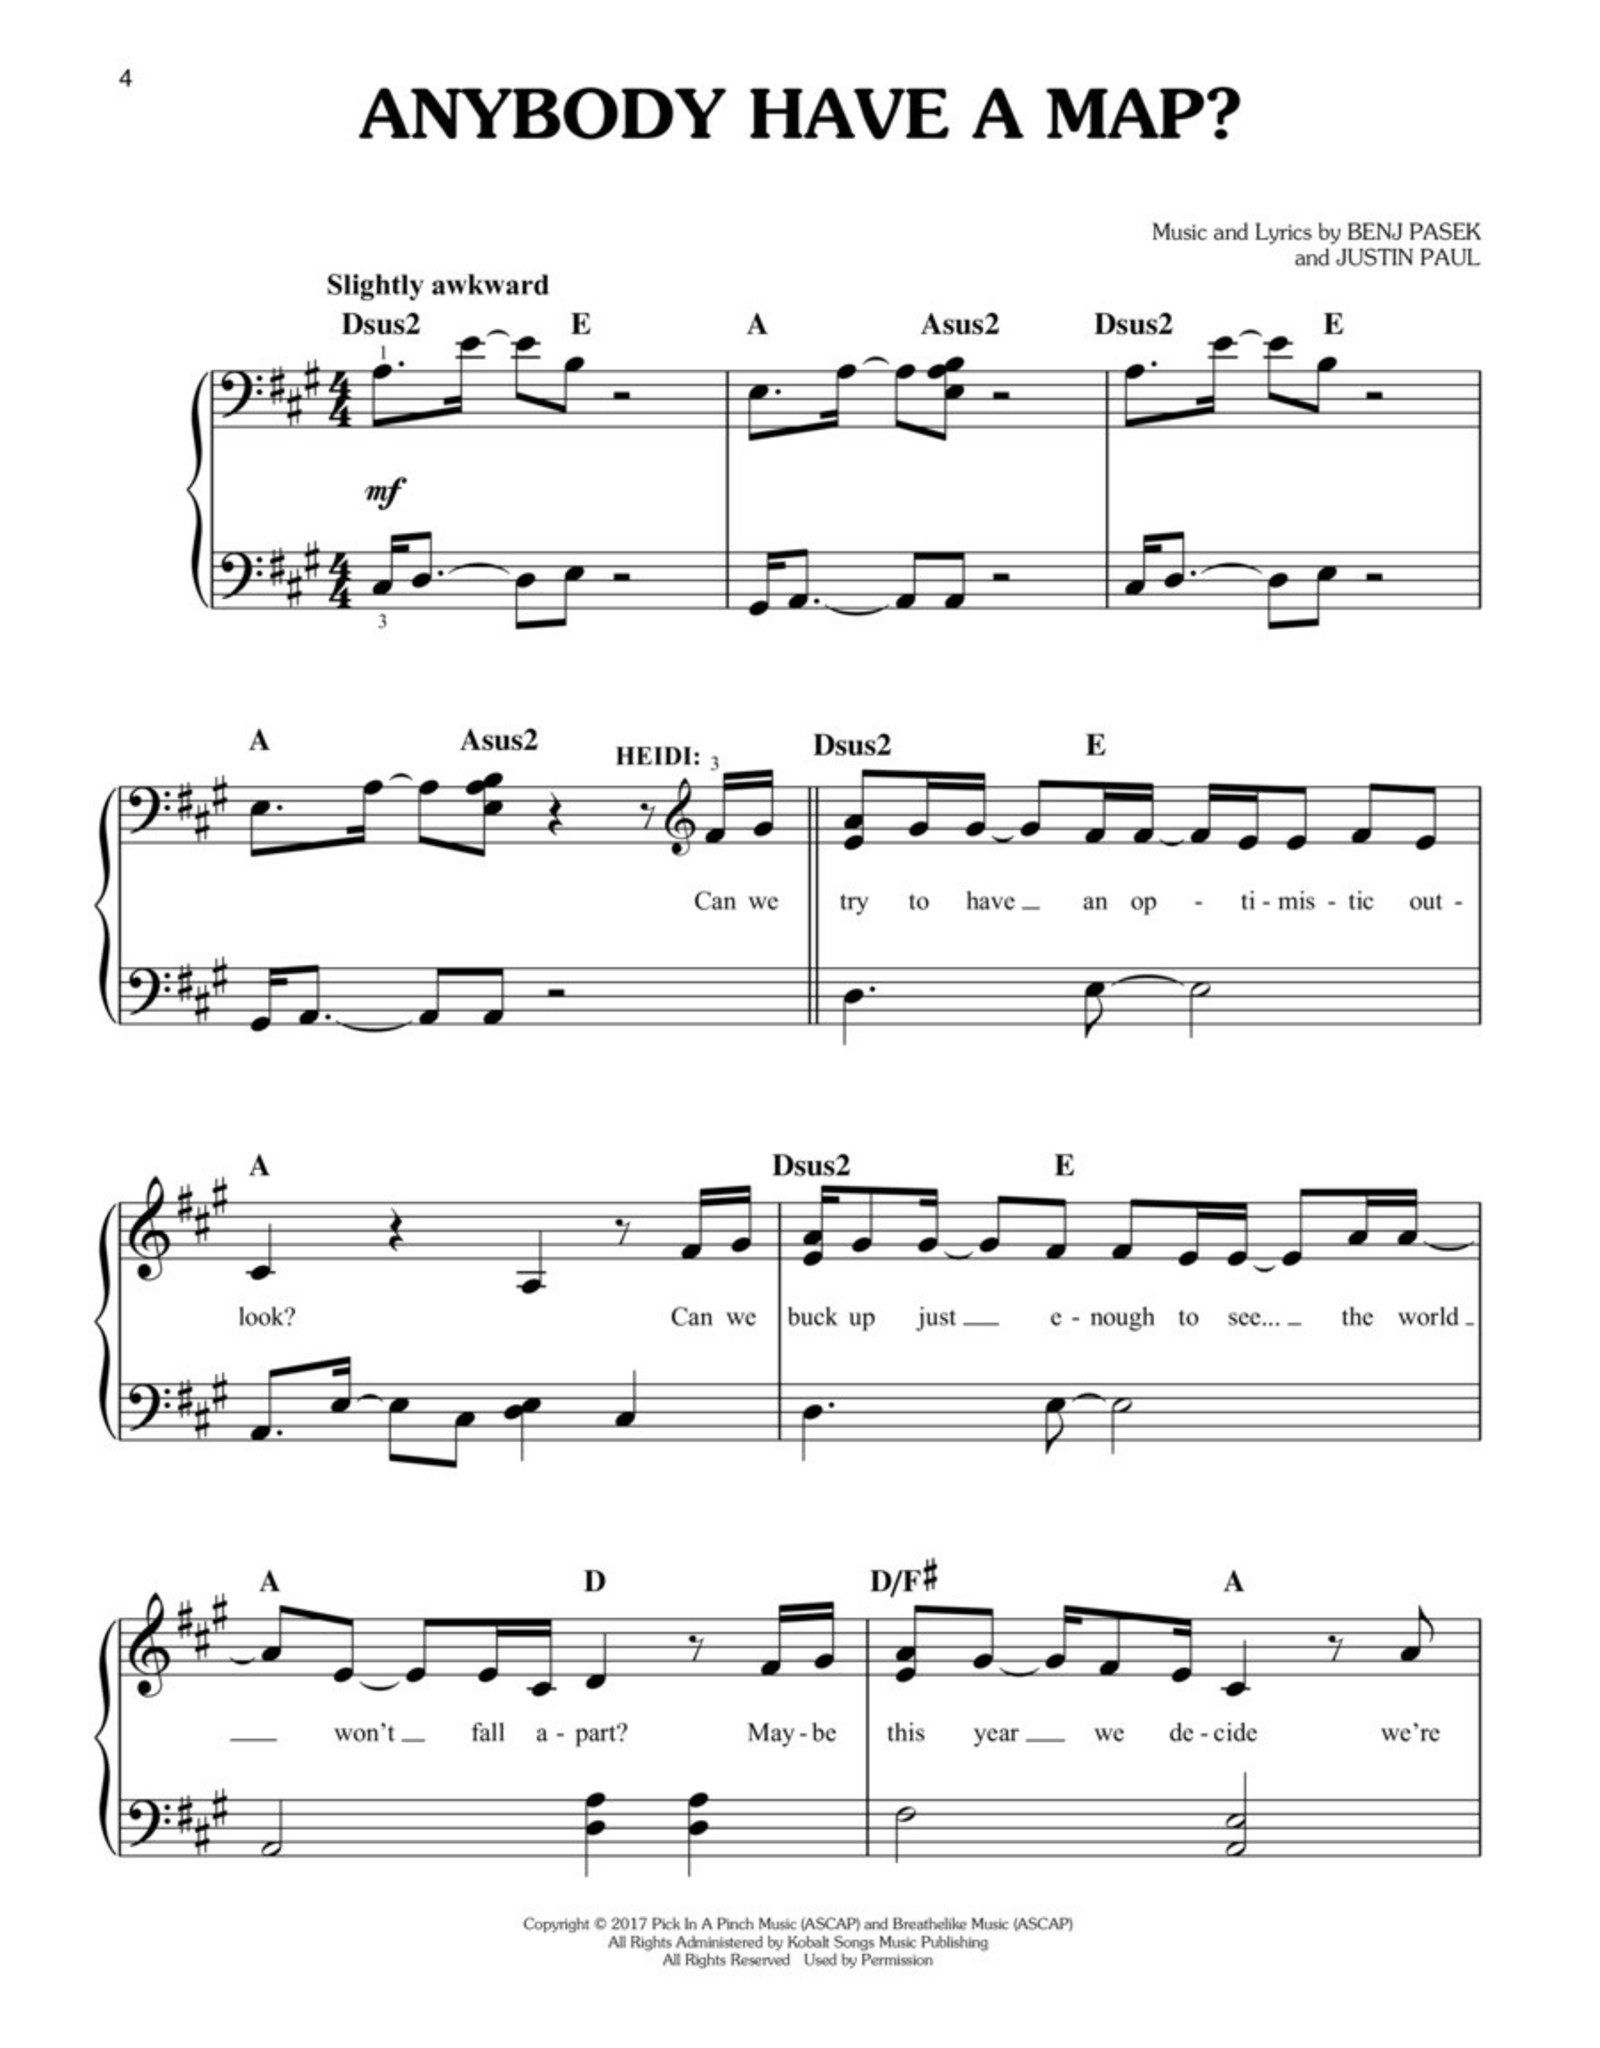 Hal Leonard Dear Evan Hansen - Vocal Selections - Easy Piano